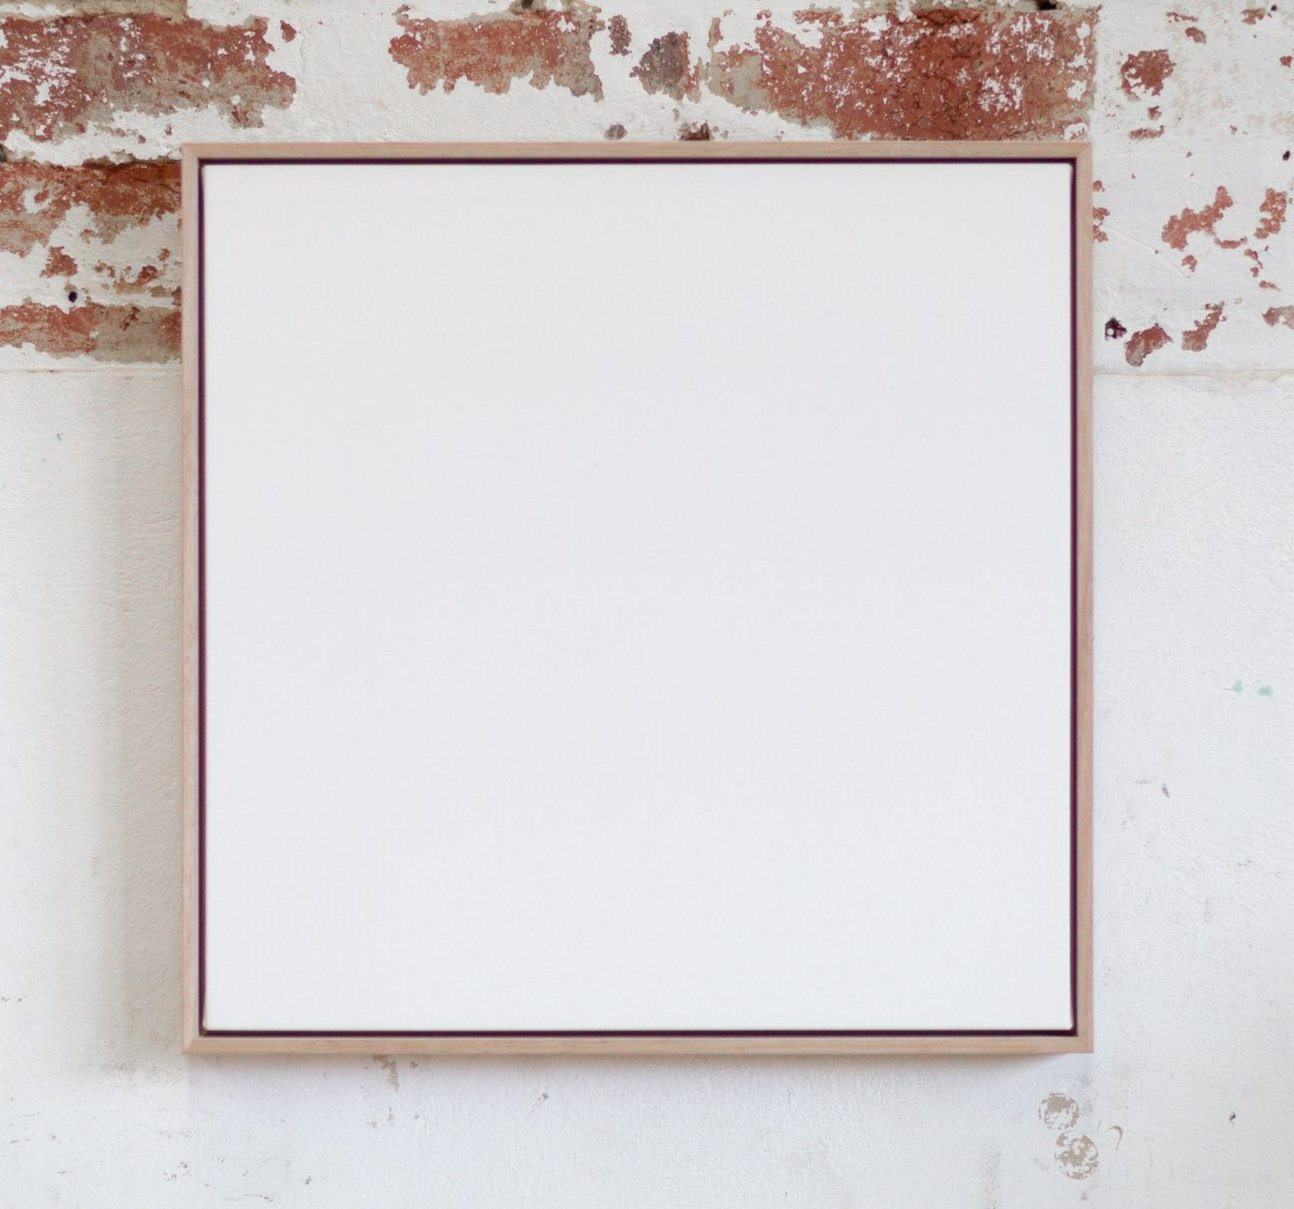 Pre framed blank canvas with oak floating frame